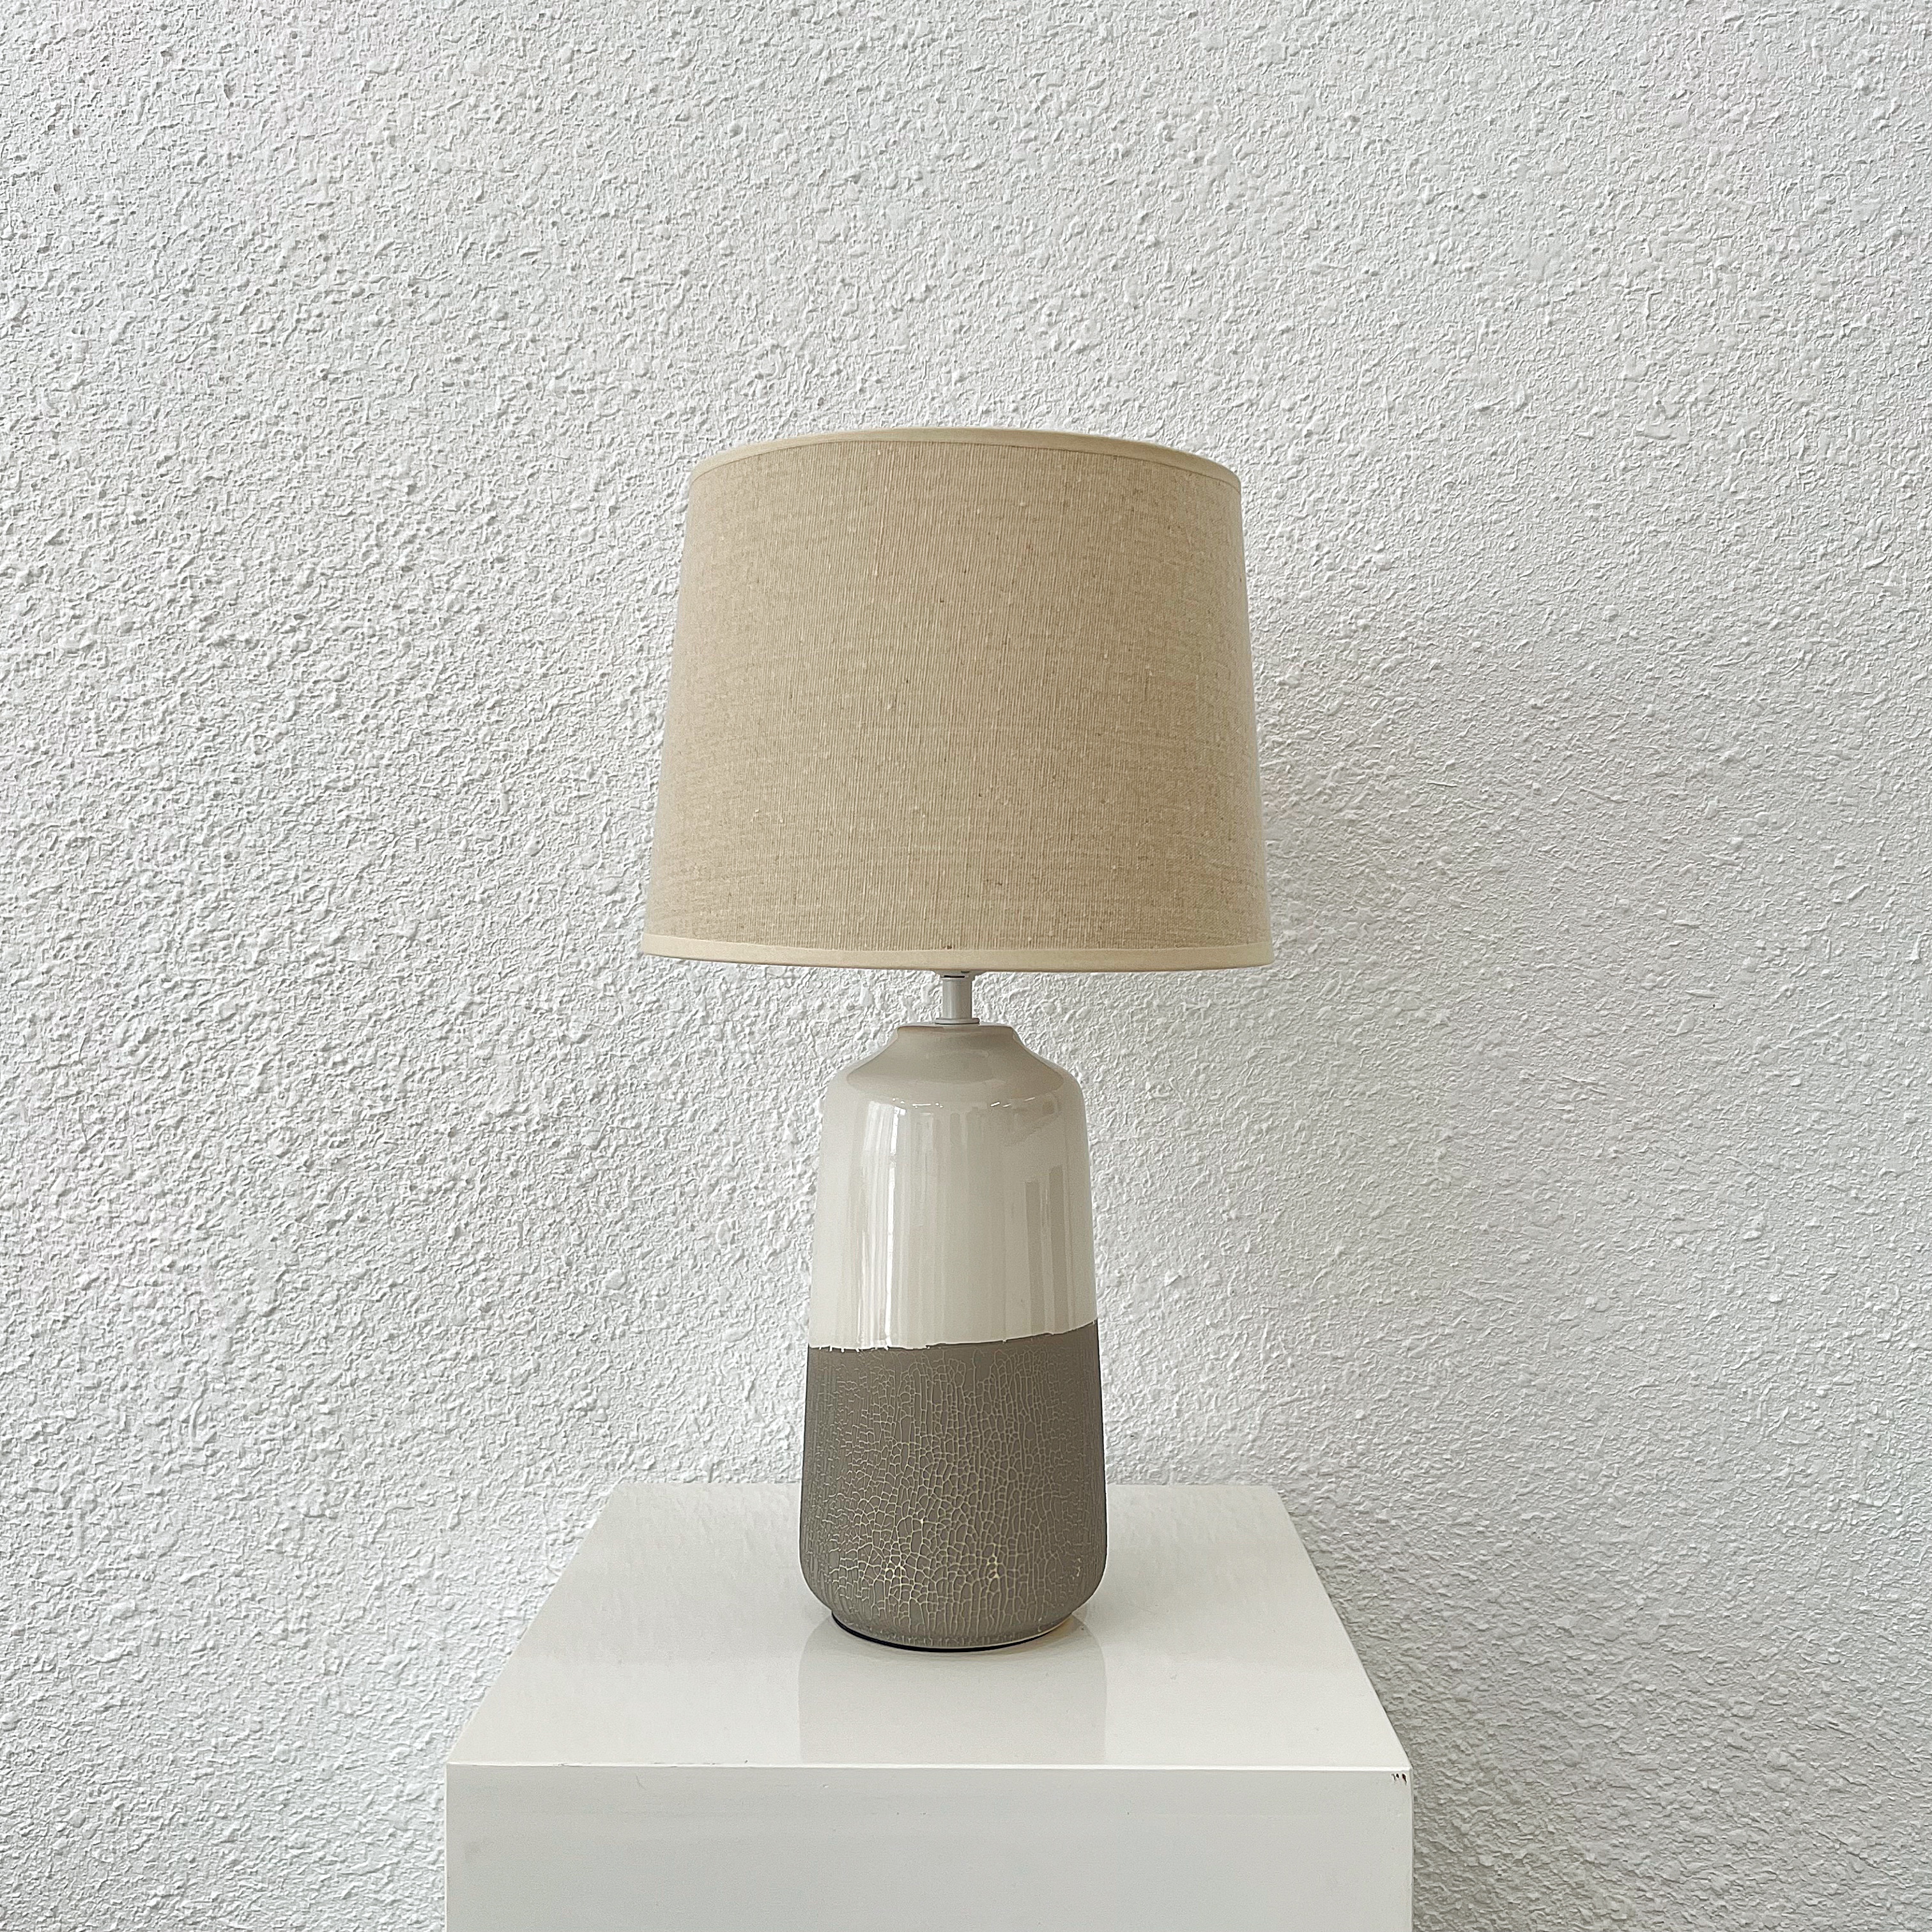 Đèn ngủ, đèn trang trí, đèn để bàn, đèn gốm sứ thiết kế độc quyền DBG011